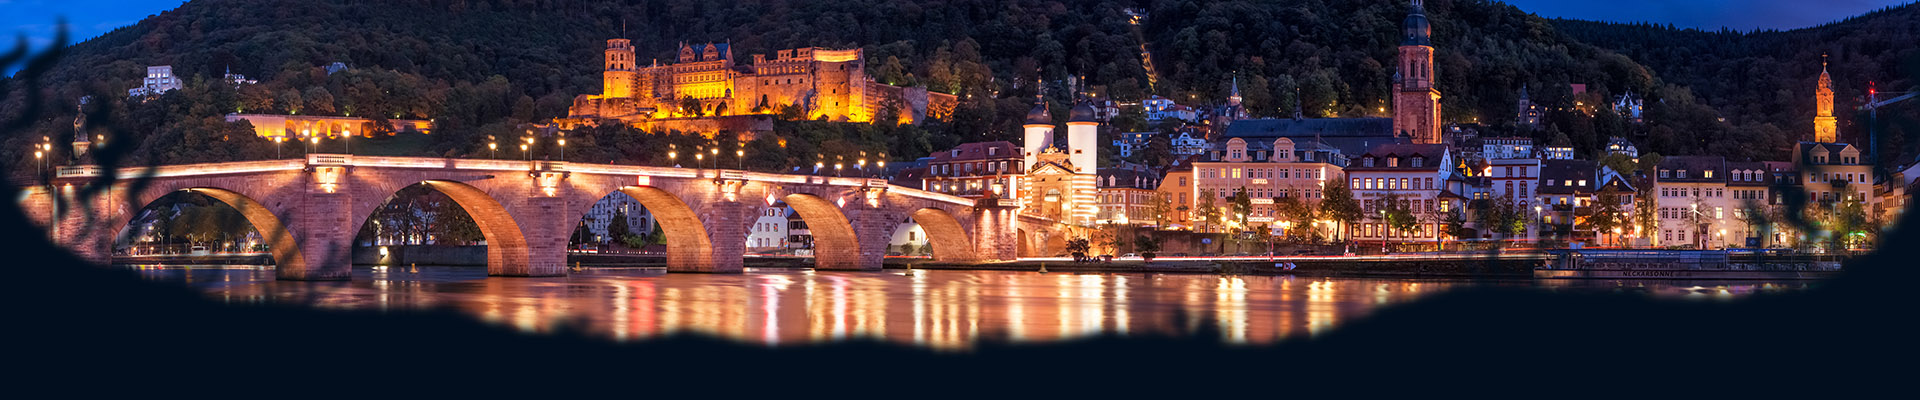 Kopfgrafik mit Blick auf Heidelberg bei Nacht